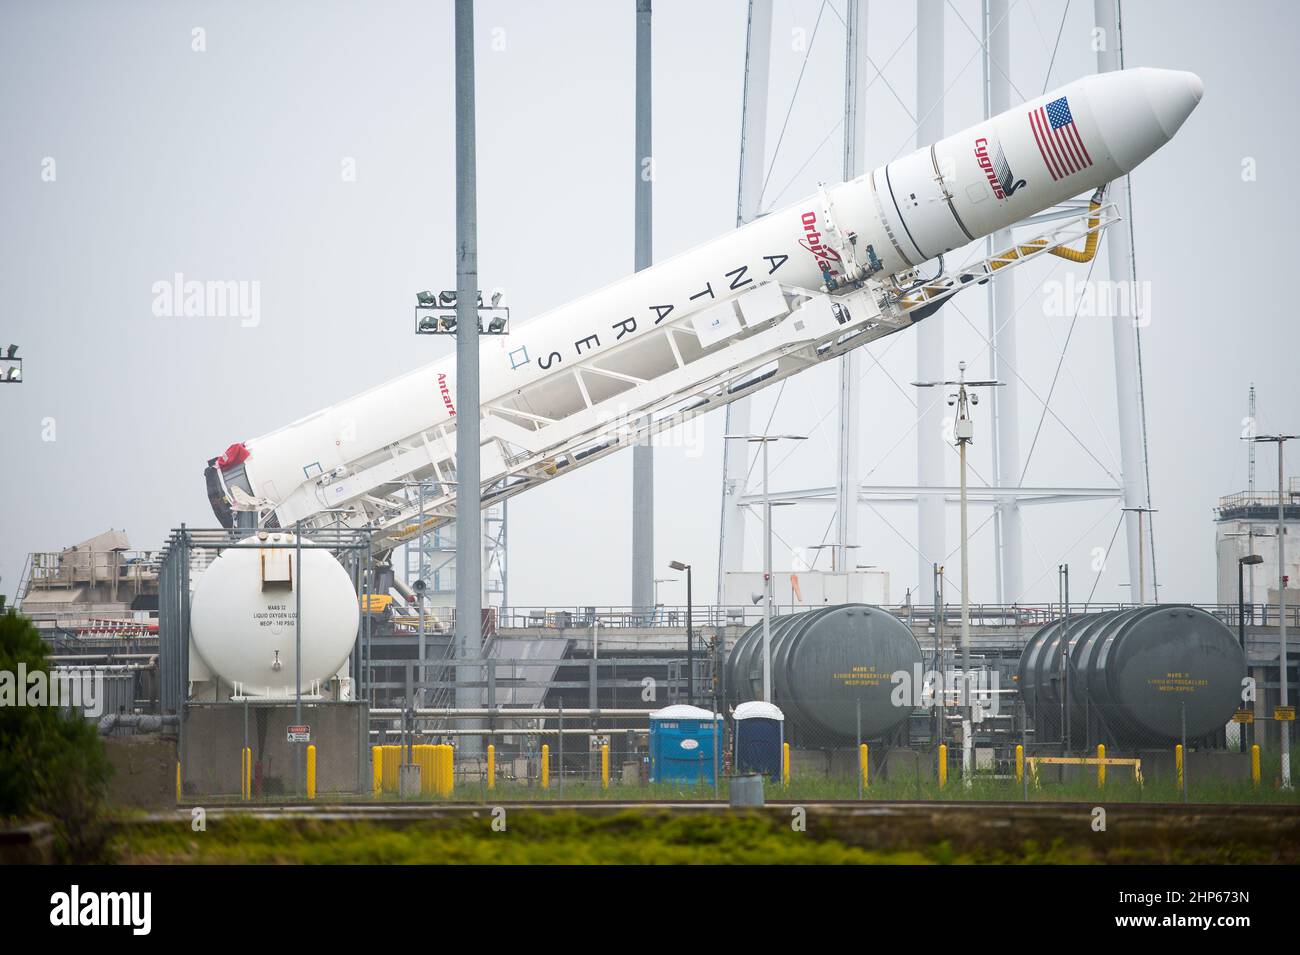 Il razzo Orbital Sciences Corporation Antares, con la navicella spaziale Cygnus a bordo, è cresciuto al lancio Pad-0A, giovedì 10 luglio 2014, presso la NASA's Wallops Flight Facility in Virginia. Foto Stock